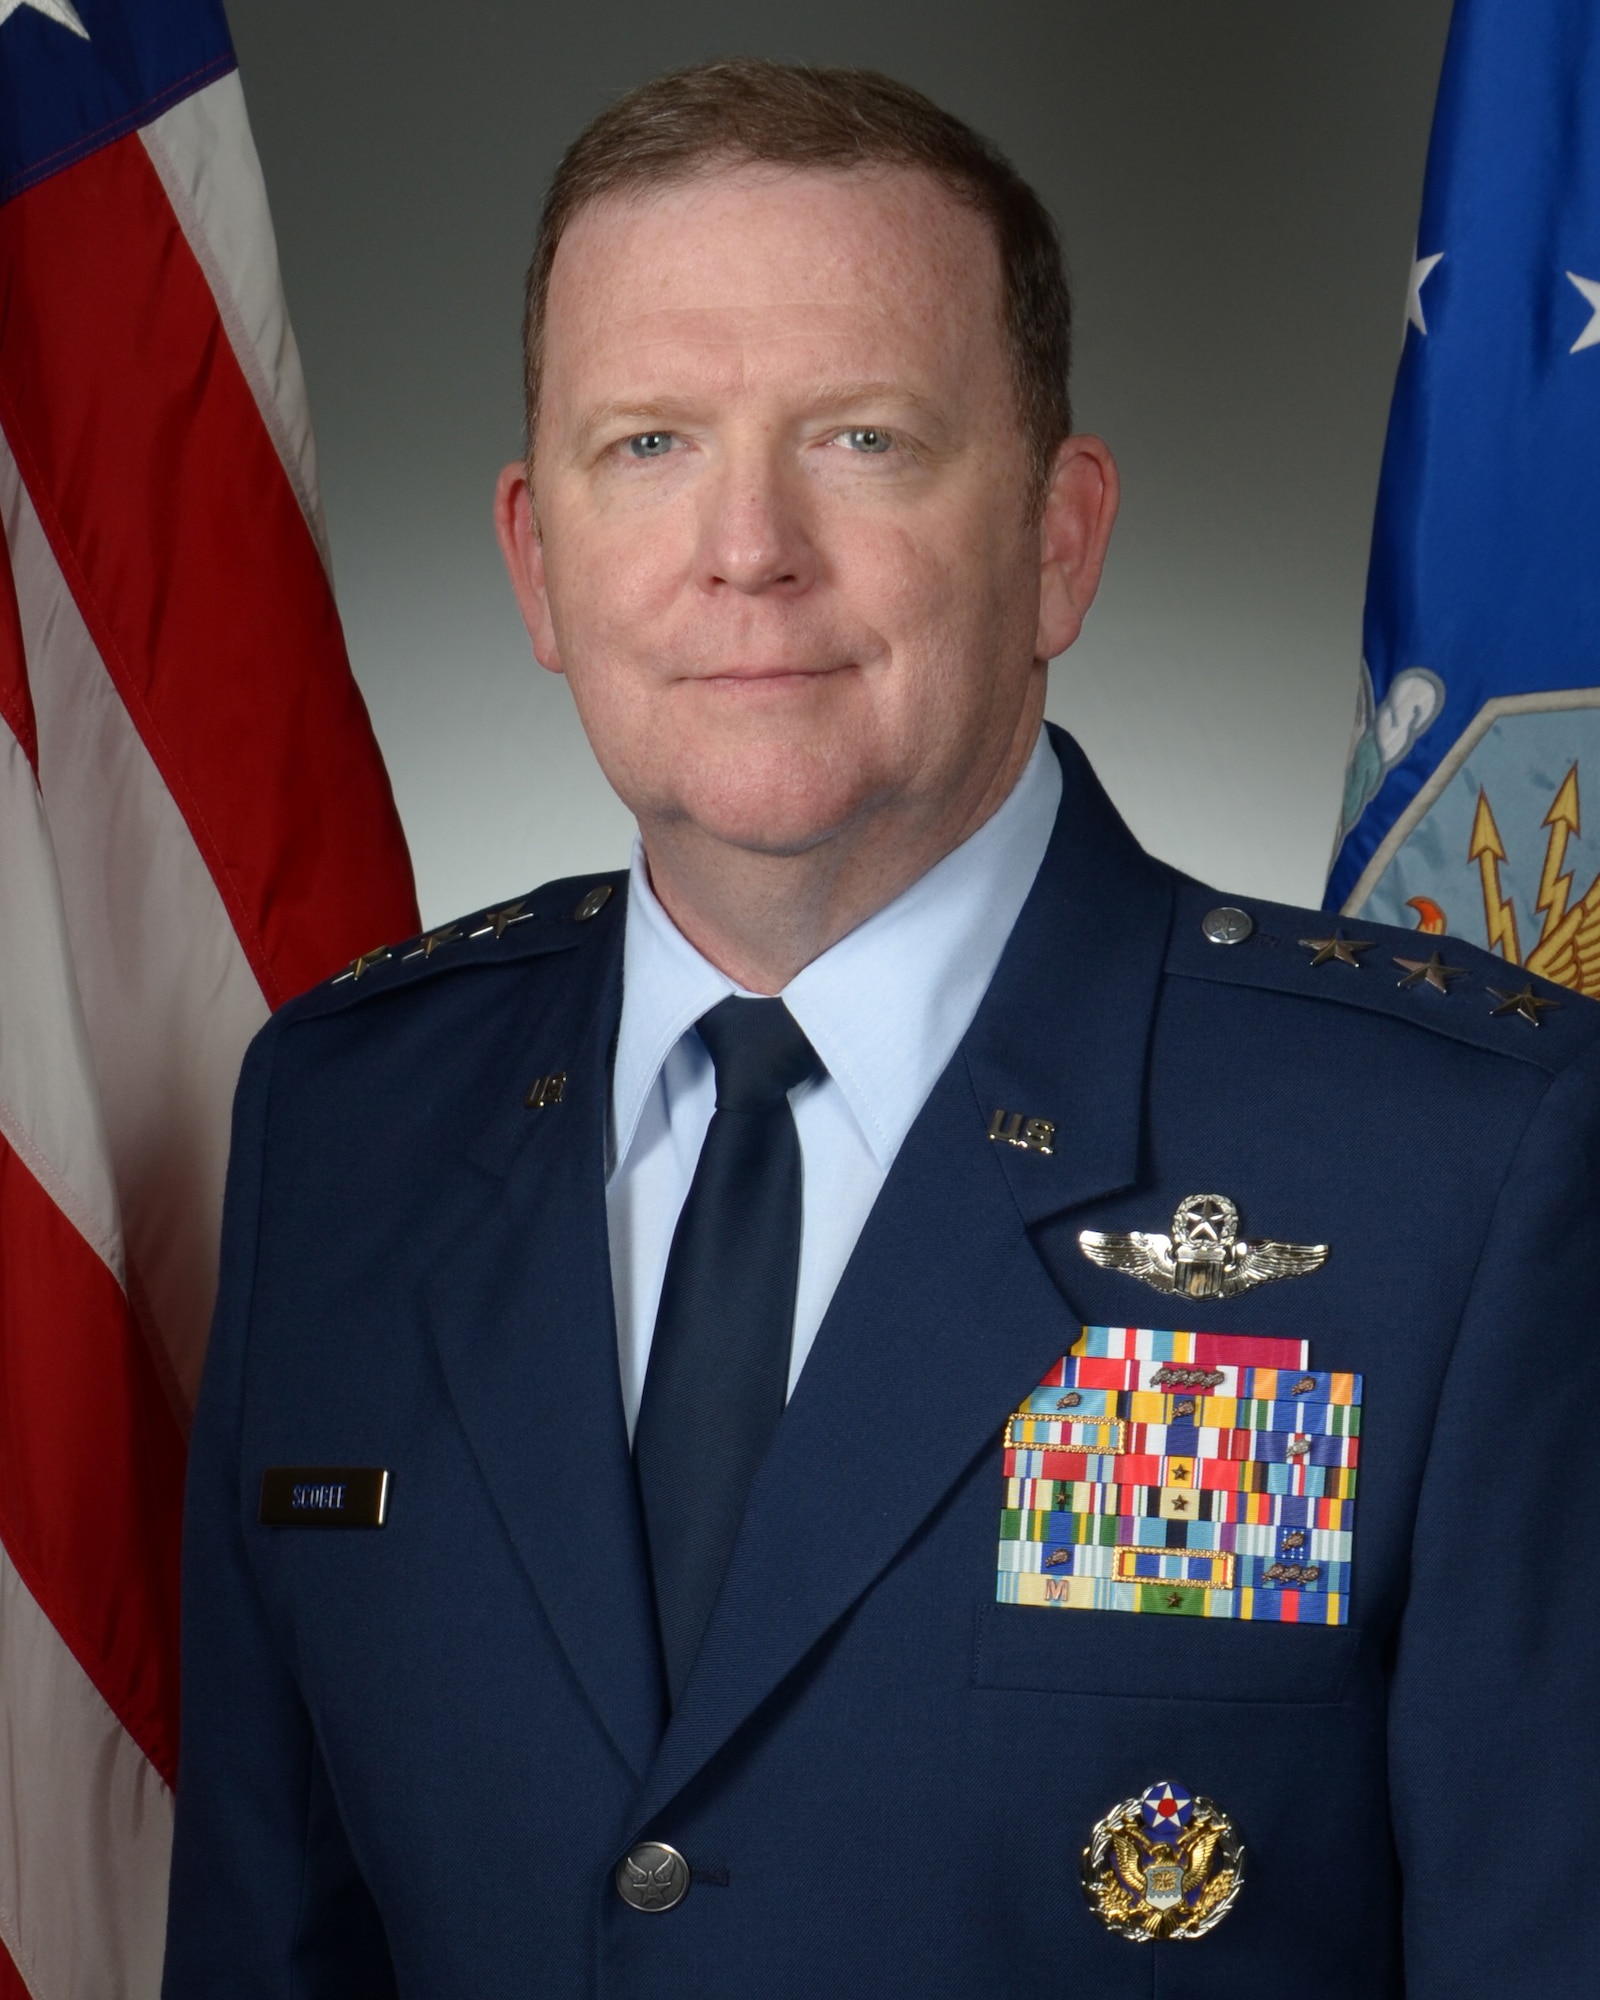 Lt. Gen. Richard W. Scobee